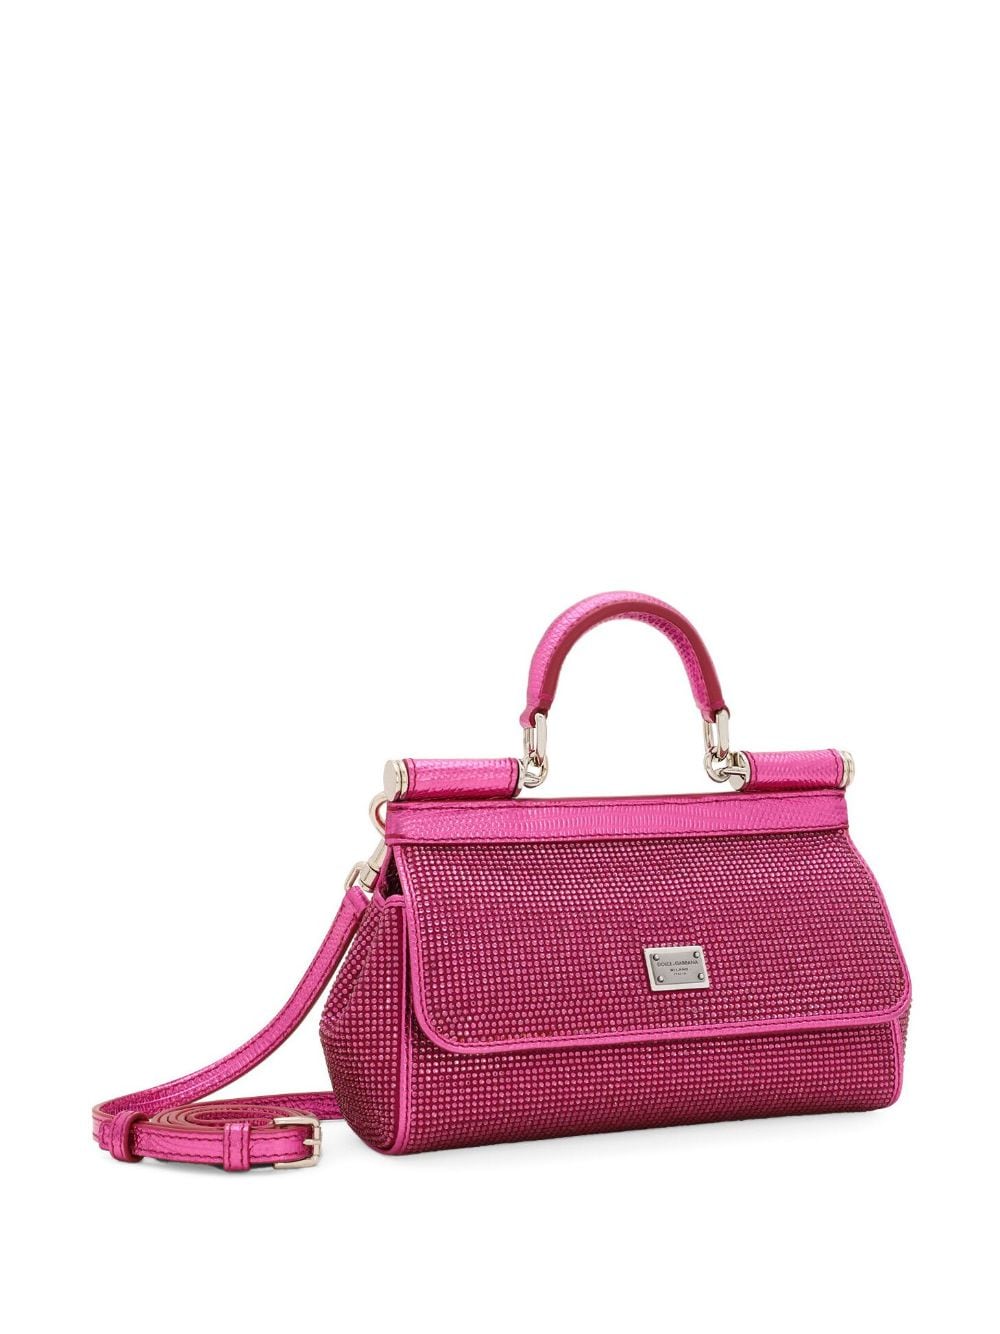 可愛らしいピンク色のラインストーンハンドバッグ